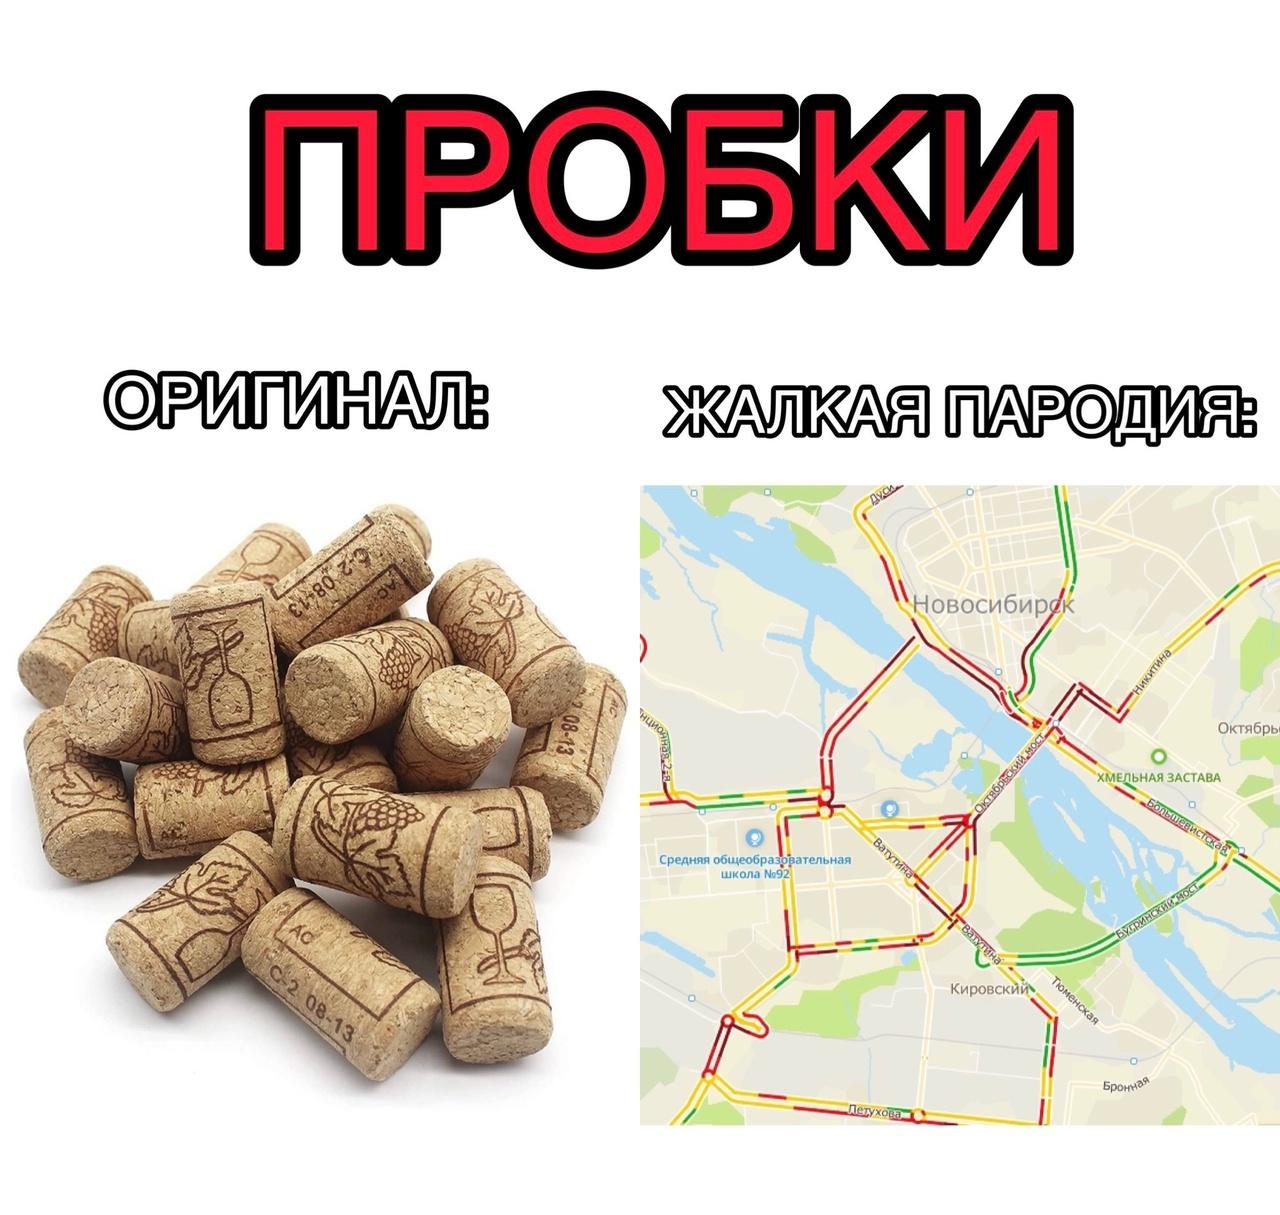 Фото 7 главных мемов про Новосибирск, над которыми смеётся город 3